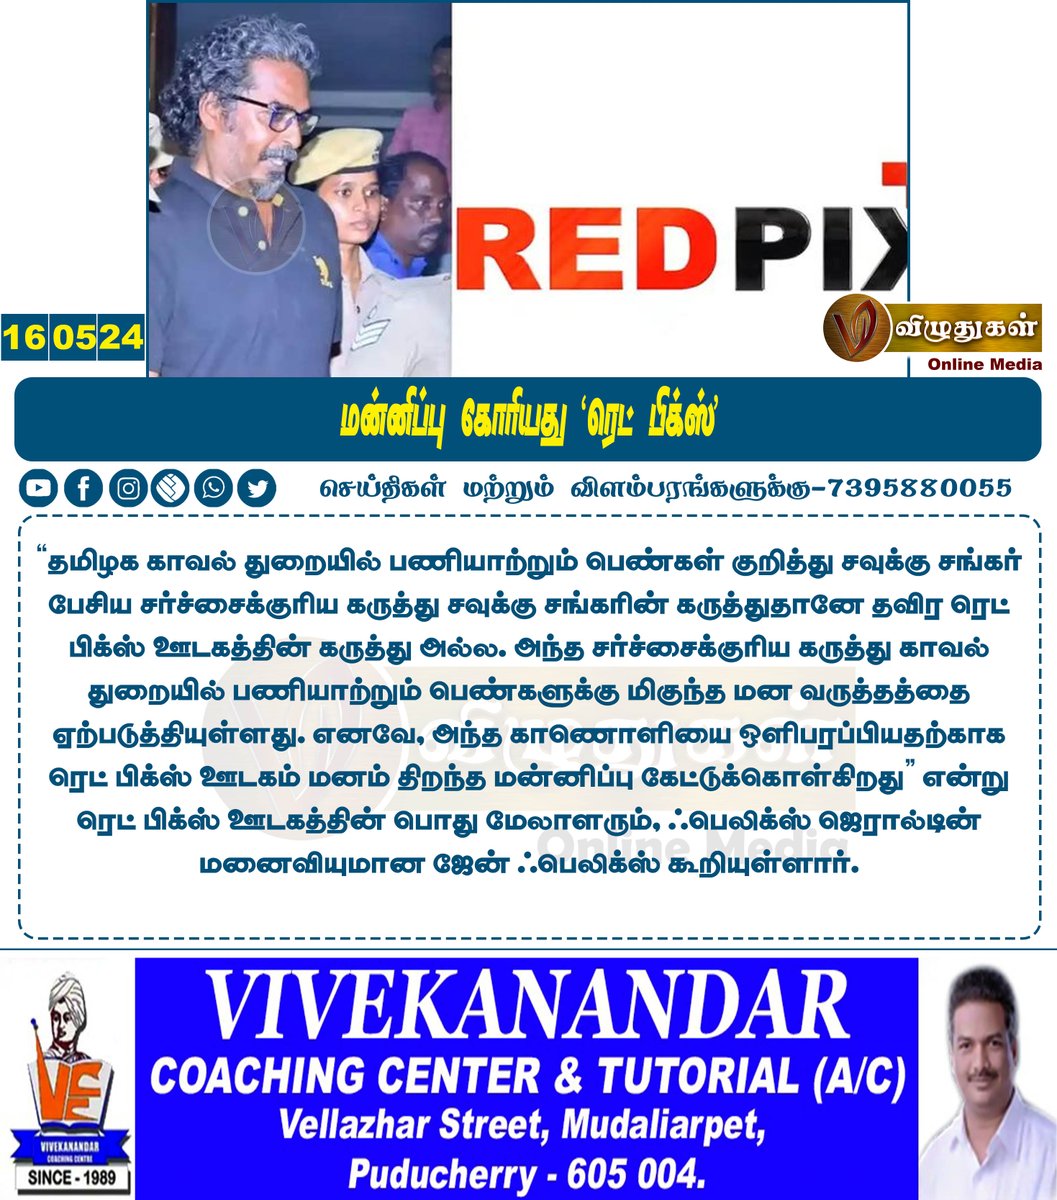 மன்னிப்பு கோரியது ‘ரெட் பிக்ஸ்’

#TamilnaduNews #Chennainews #savukkumedia #savukkushankar #youtuber #RedPix #Arrest #cybercrime #Vizhuthugalmedia